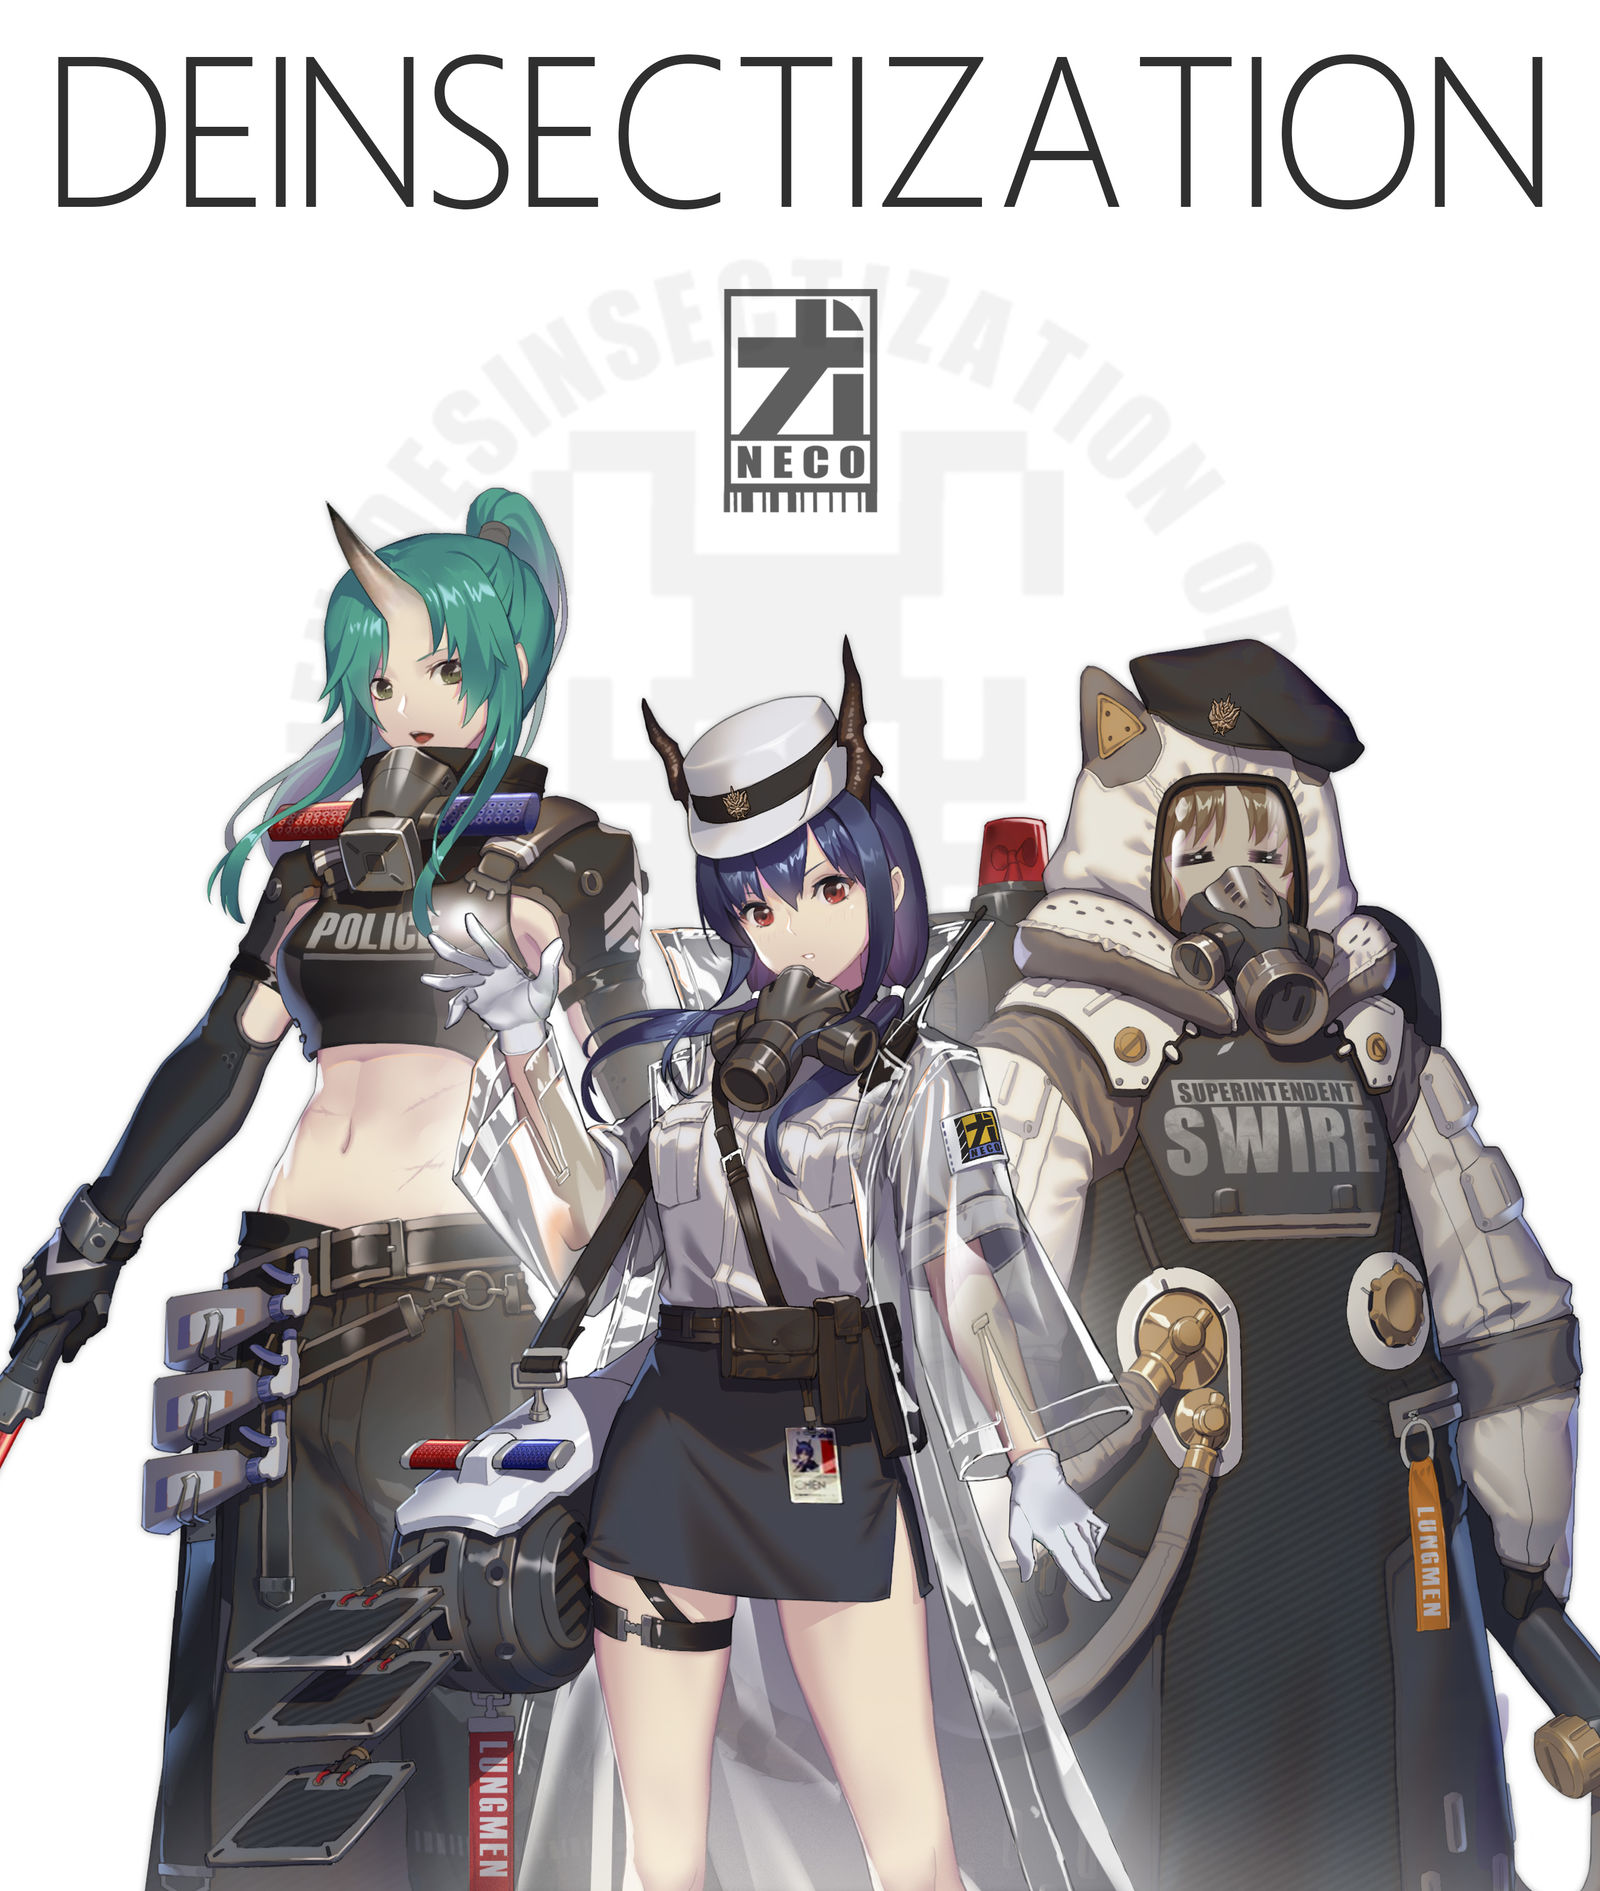 DEINSECTIZATION OPRATION